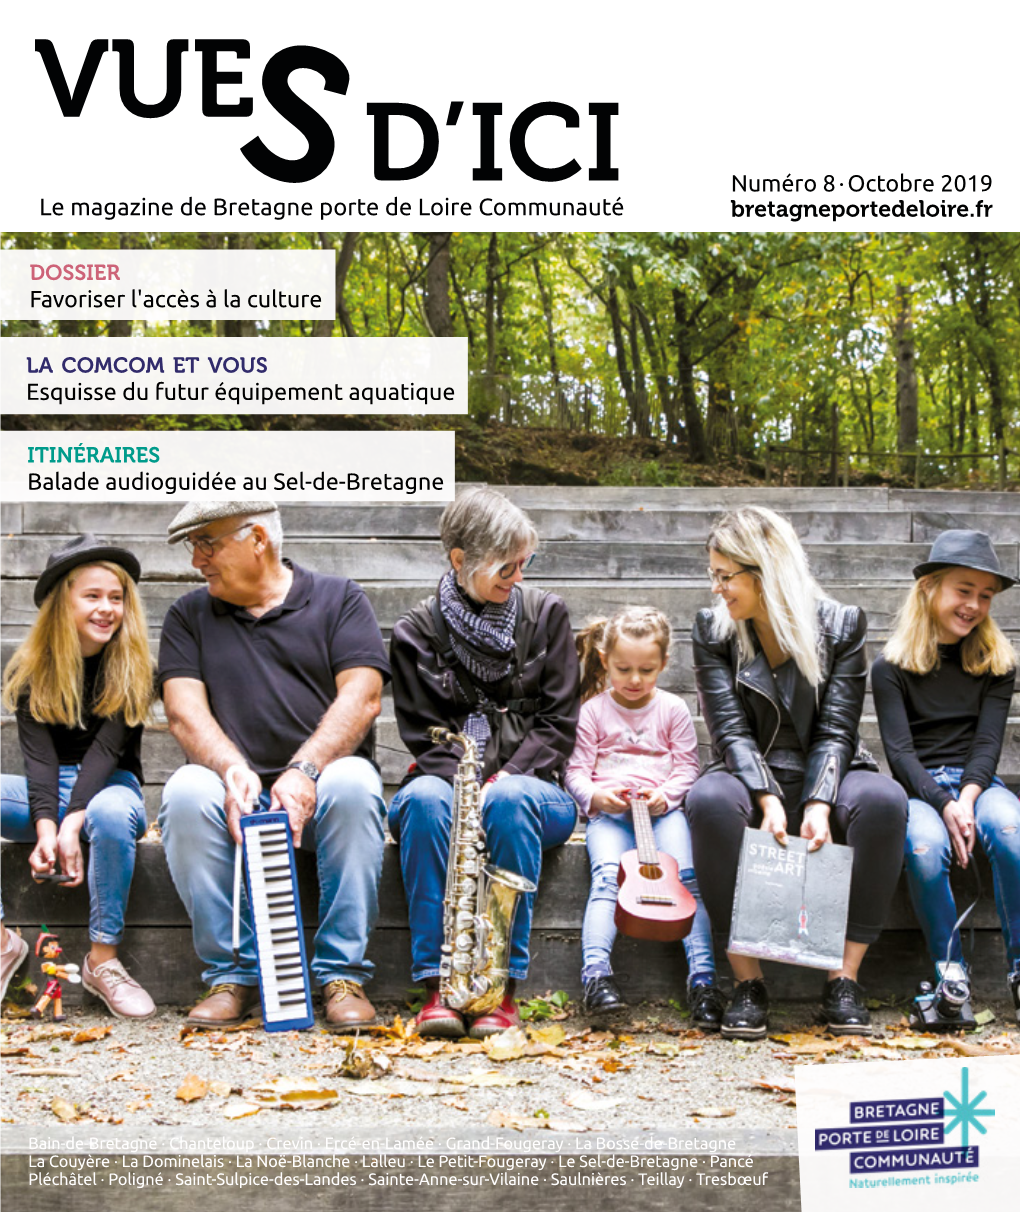 Le Magazine De Bretagne Porte De Loire Communauté Favoriser L